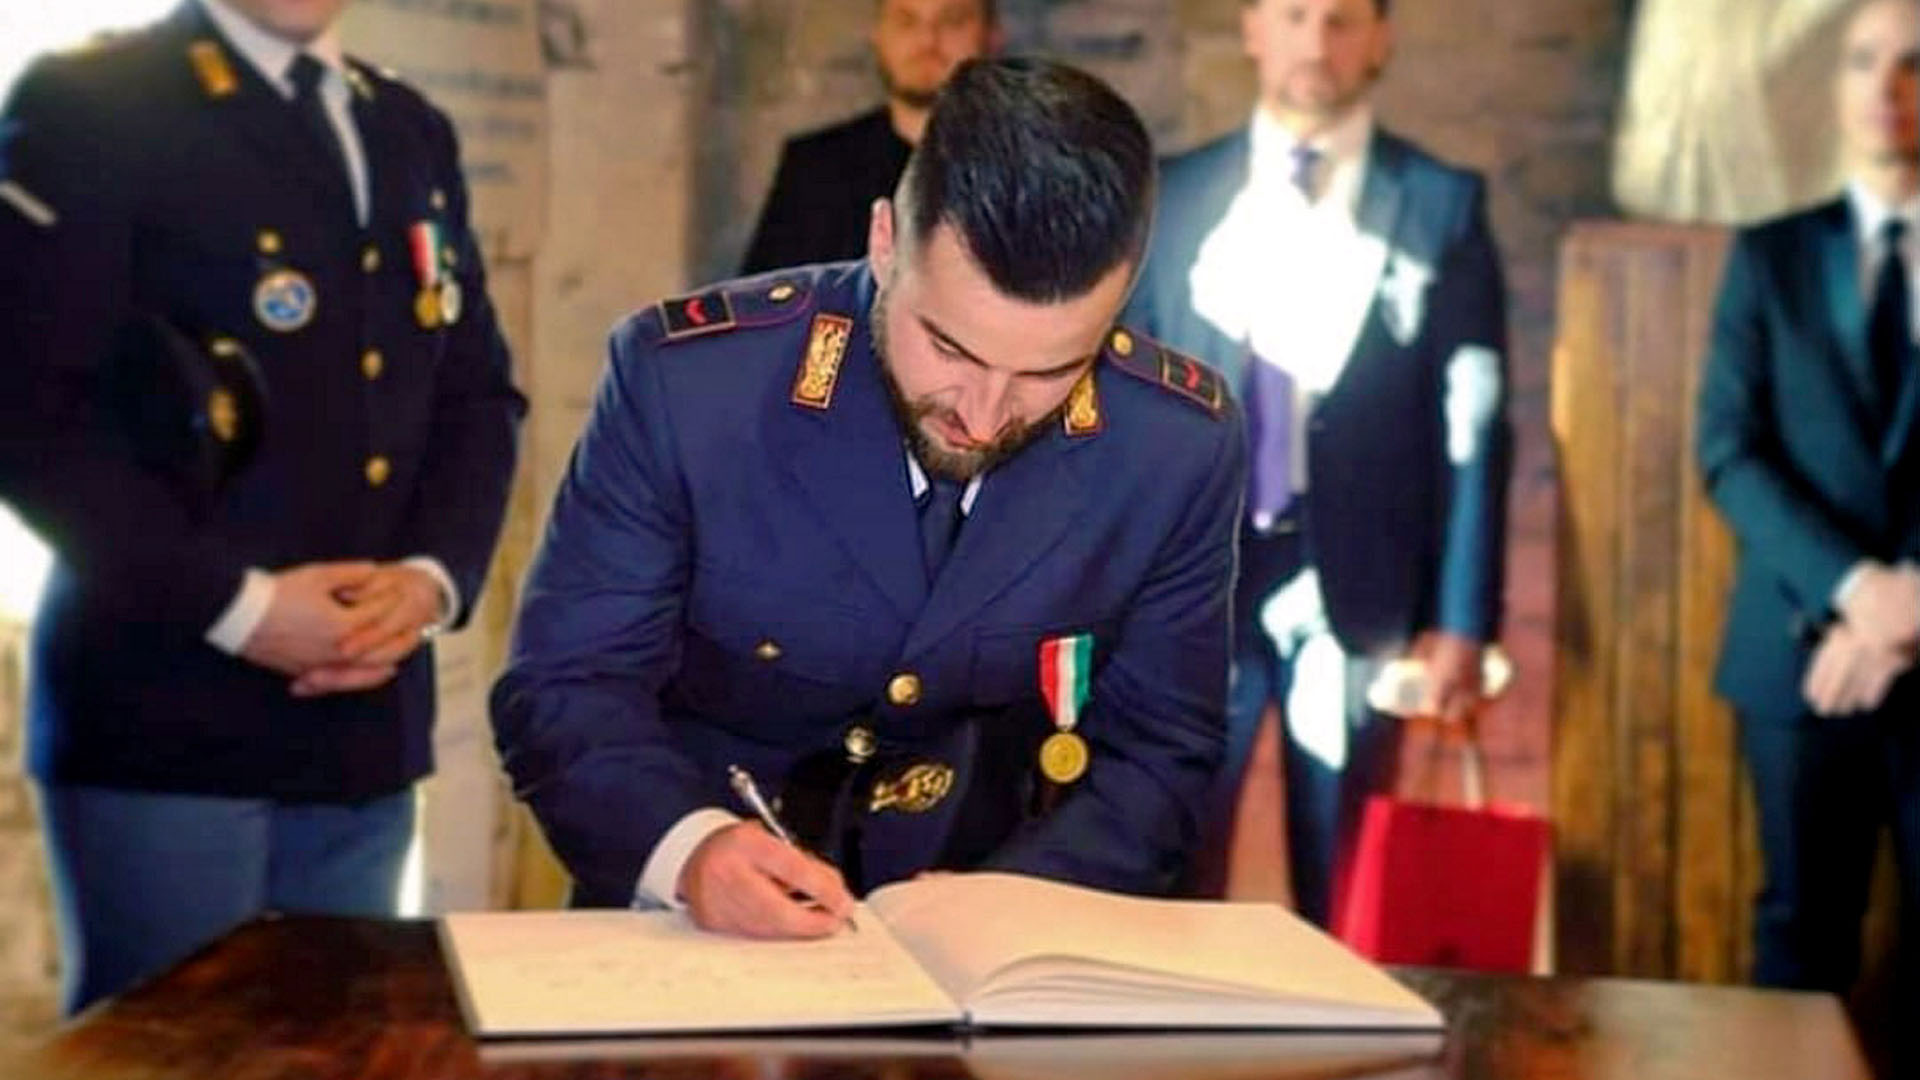 Archivbild: Polizsit Luca Scata trägt sich in ein Ehrenbuch ein. (Quelle: dpa/Ropi)